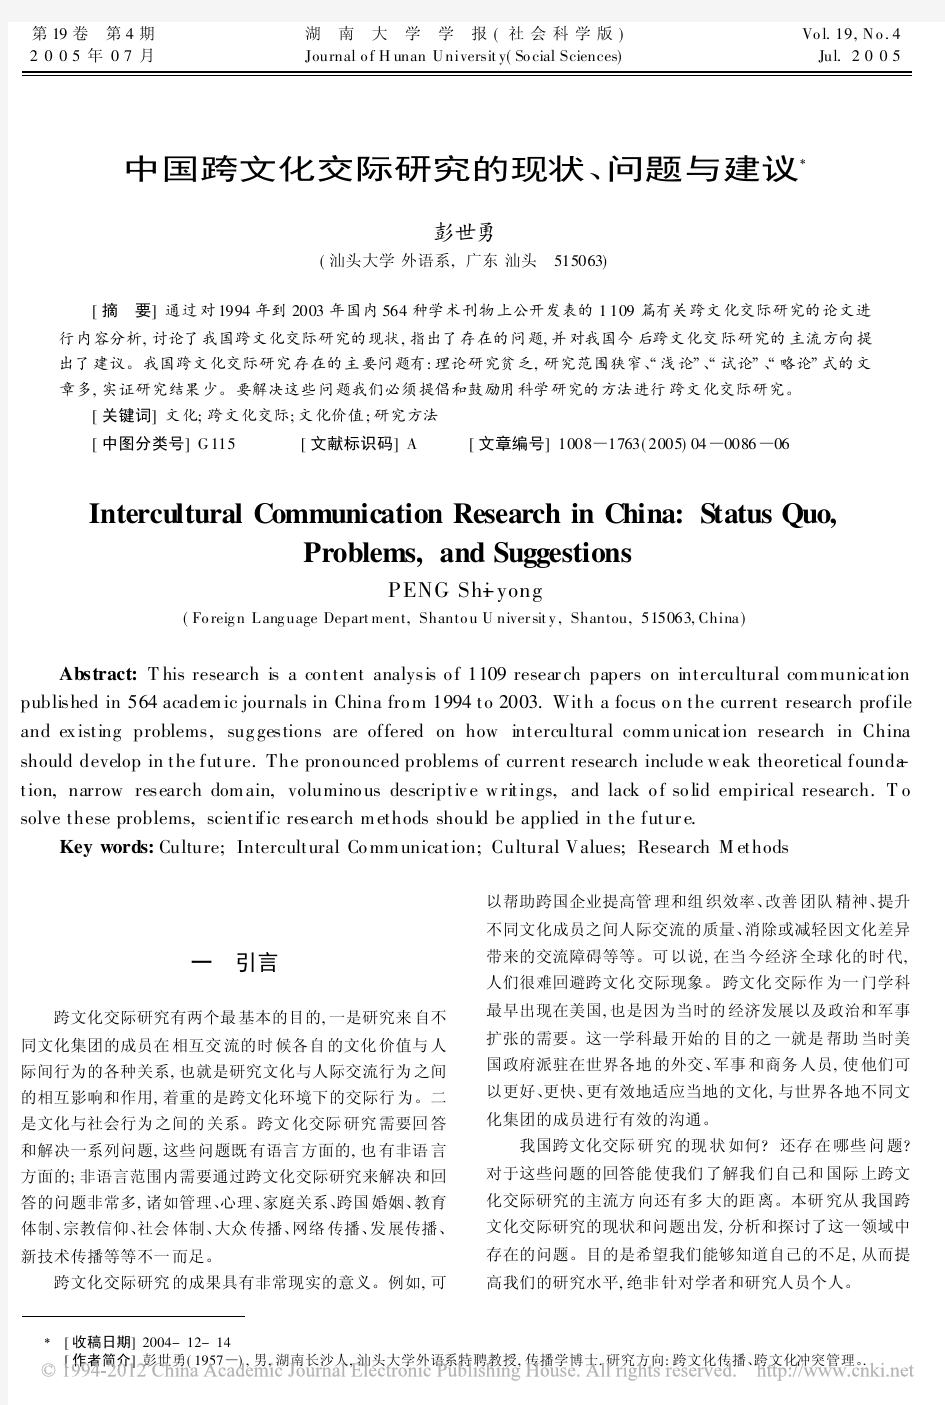 中国跨文化交际研究的现状_问题与建议_彭世勇 (1)